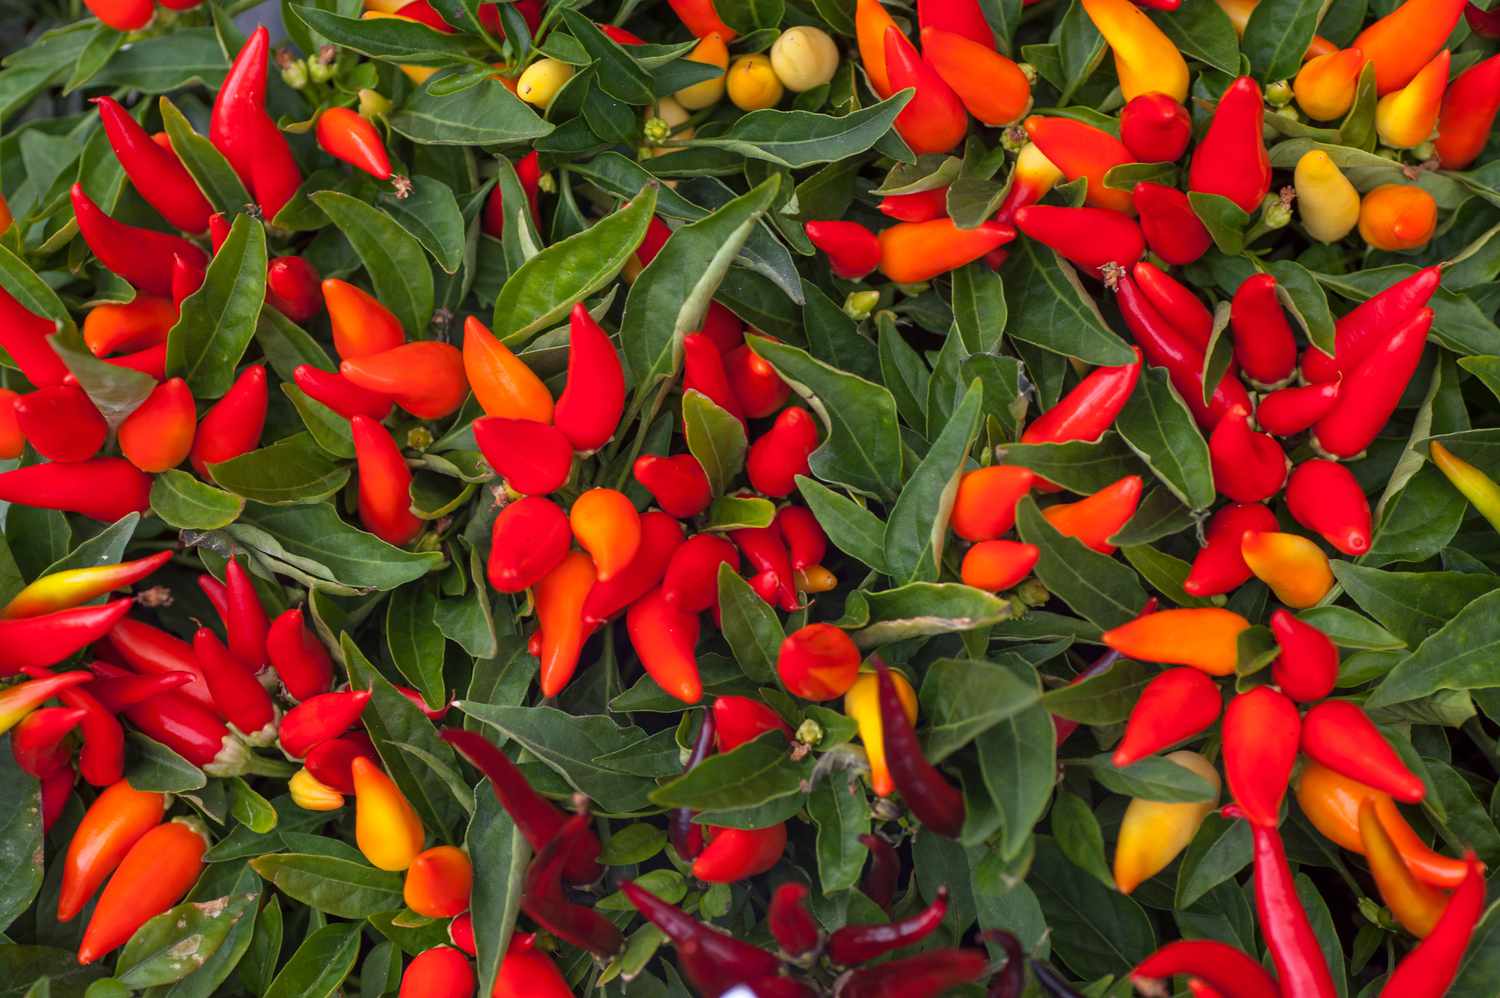 Planta de pimenta ornamental com pimentas vermelhas e laranjas pontiagudas agrupadas entre folhas longas